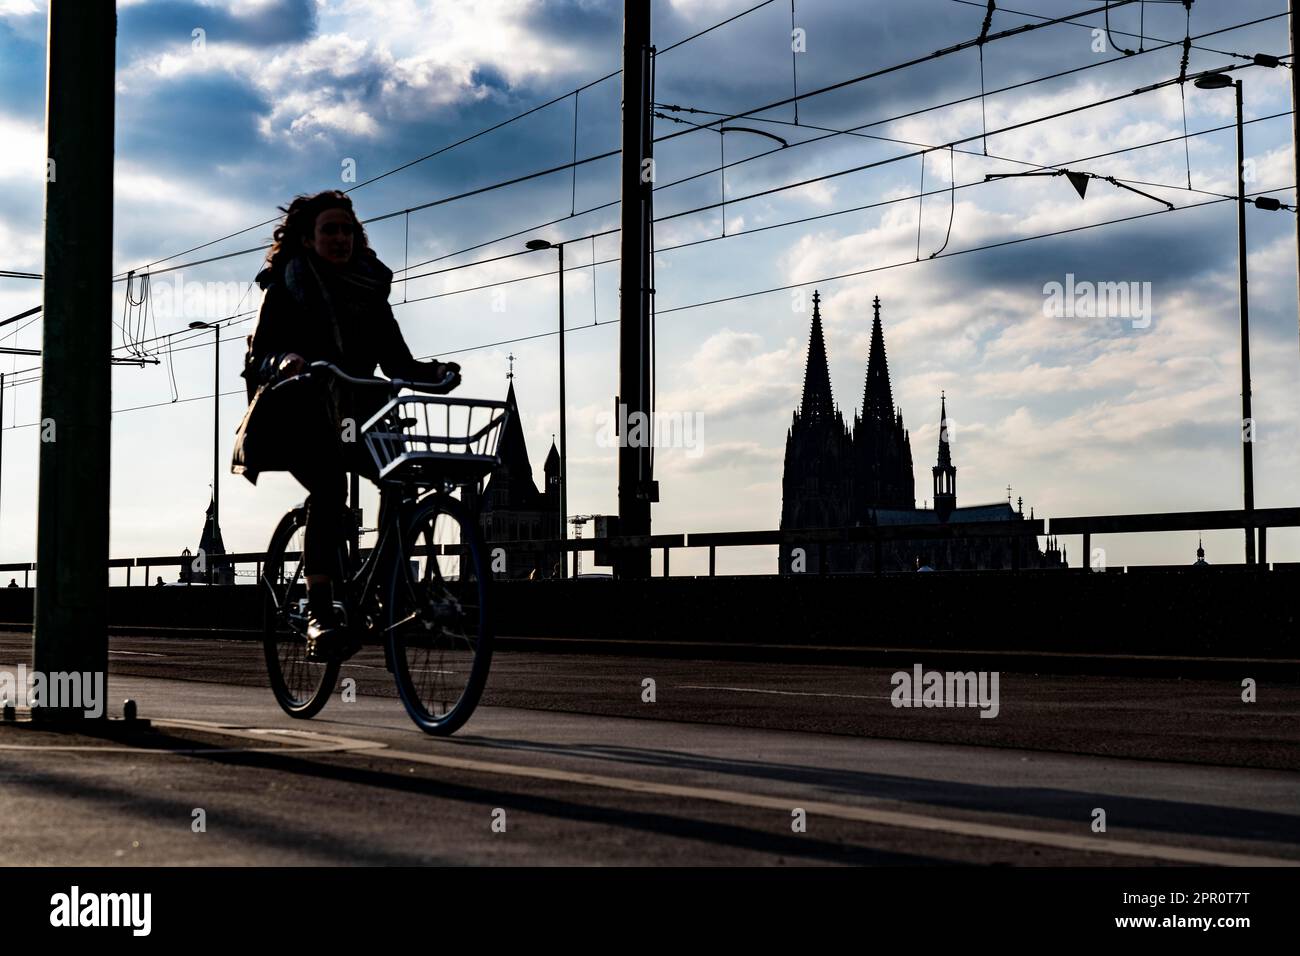 Cyclisme dans la grande ville, cyclistes sur le pont Deutzer à Cologne, cathédrale de Cologne, piste cyclable, NRW, Allemagne Banque D'Images